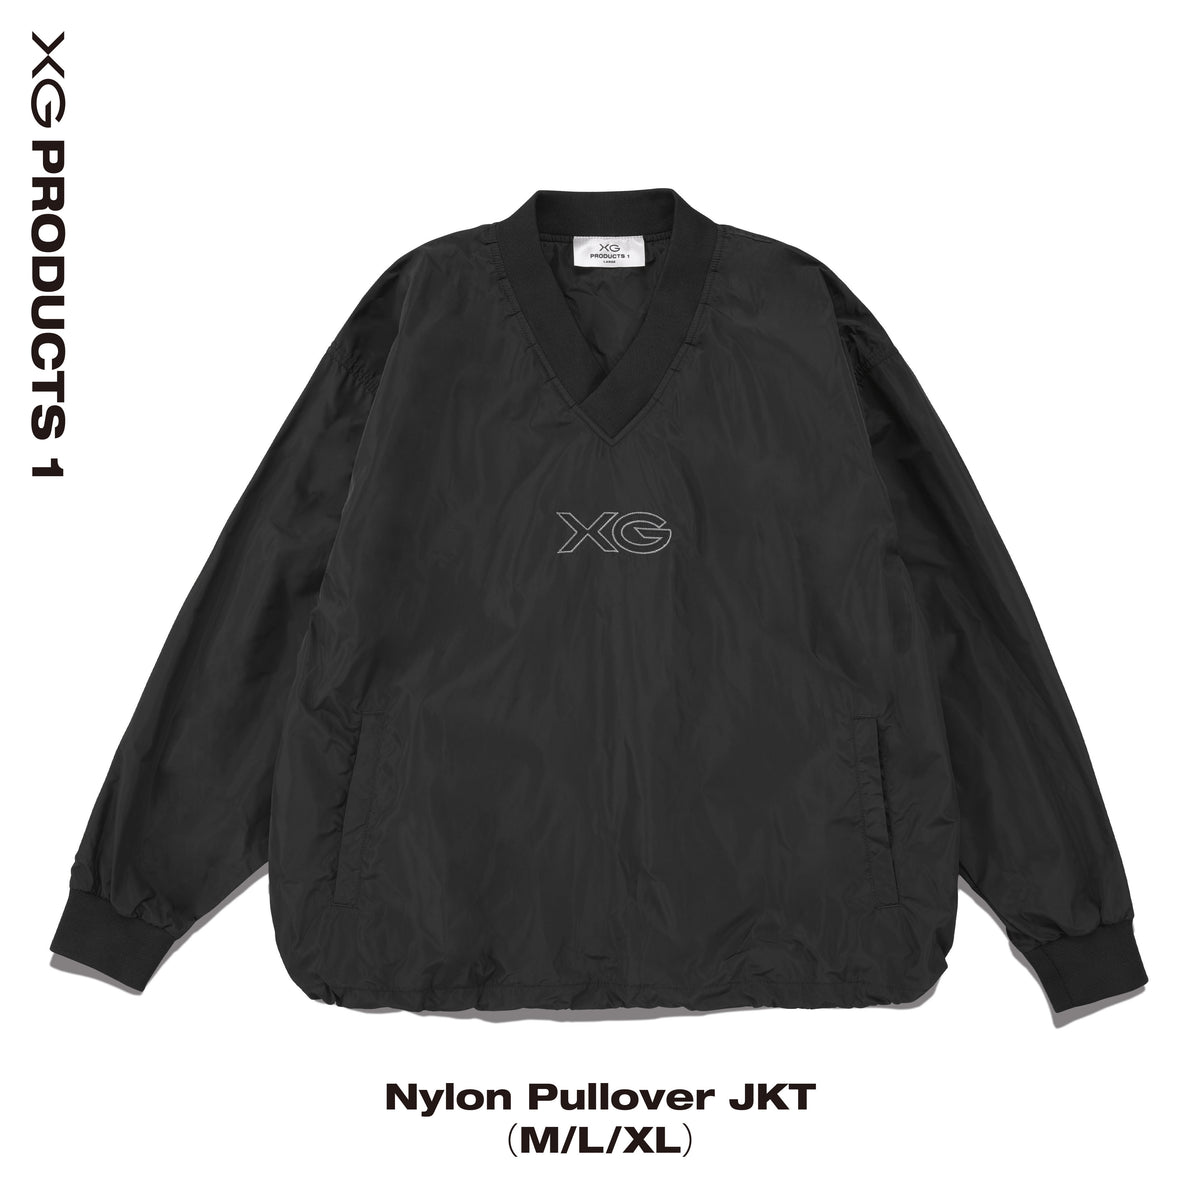 とってもかわいいのですがXG Nylon Pullover JKT